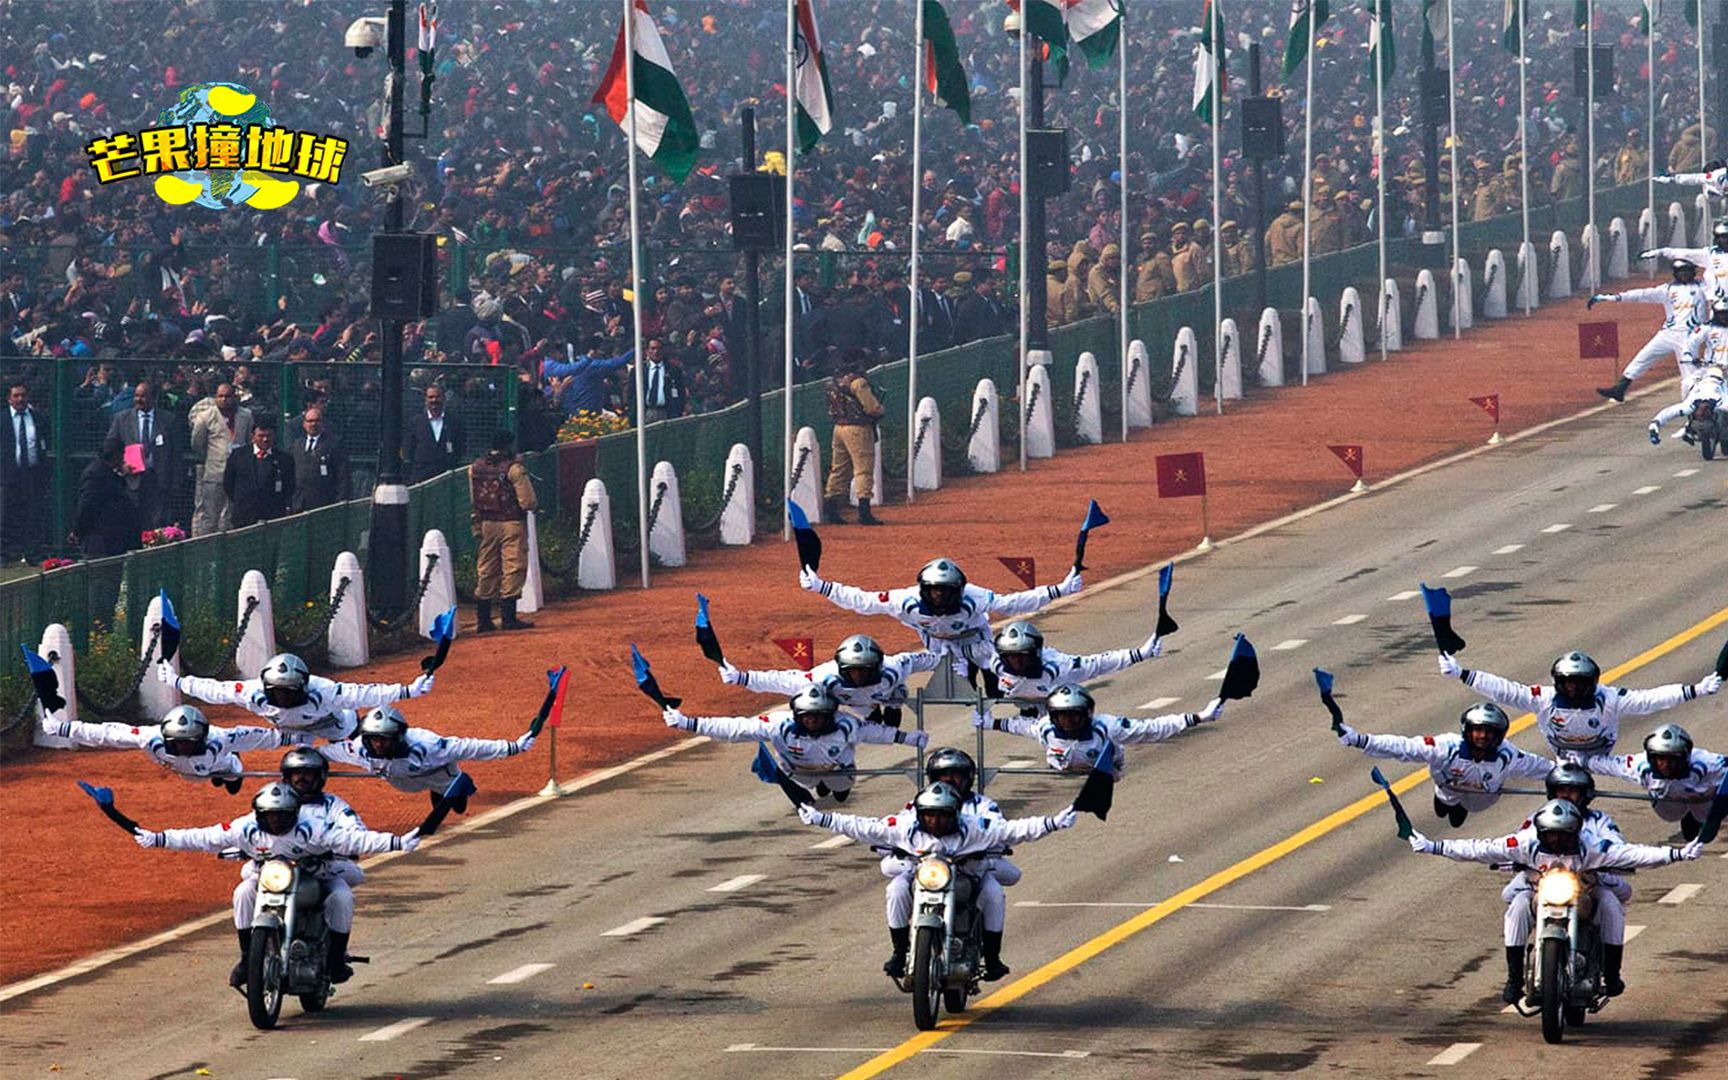 【东北玩泥巴】印度阅兵摩托军 马戏杂技无敌啦_星海_科技_bilibili_哔哩哔哩